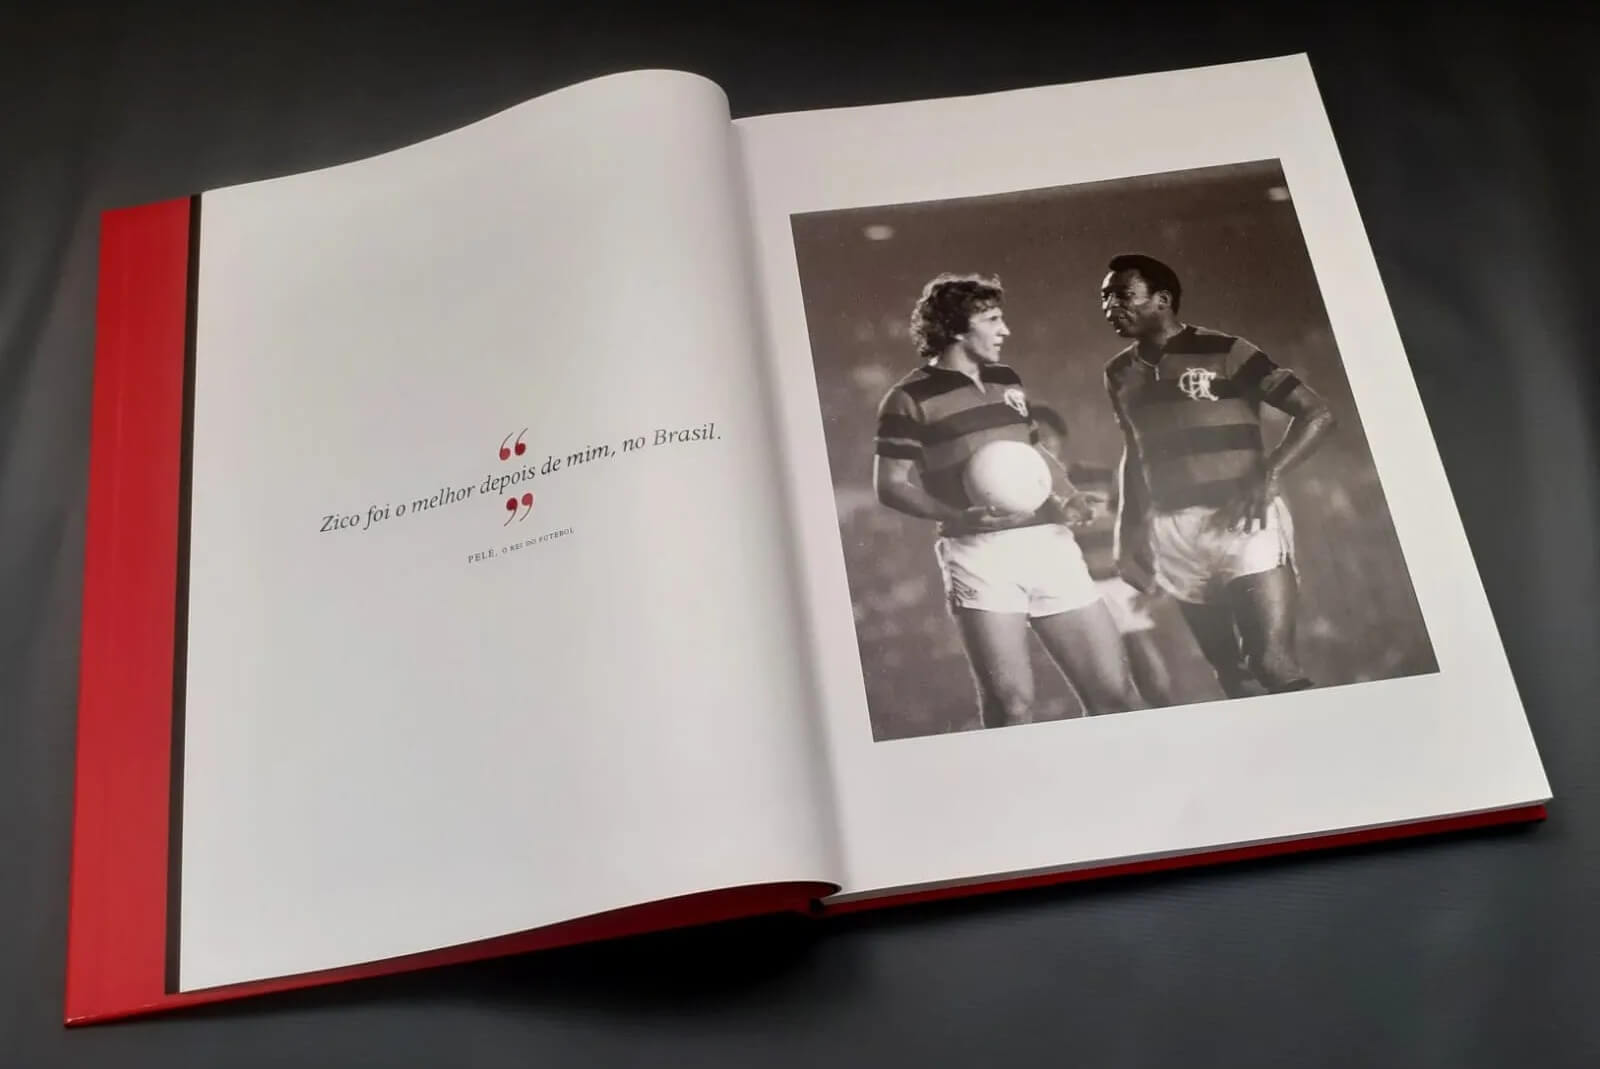 Miolo do livro aberto, mostrando foto de Zico jogando ao lado de Pelé no Flamengo